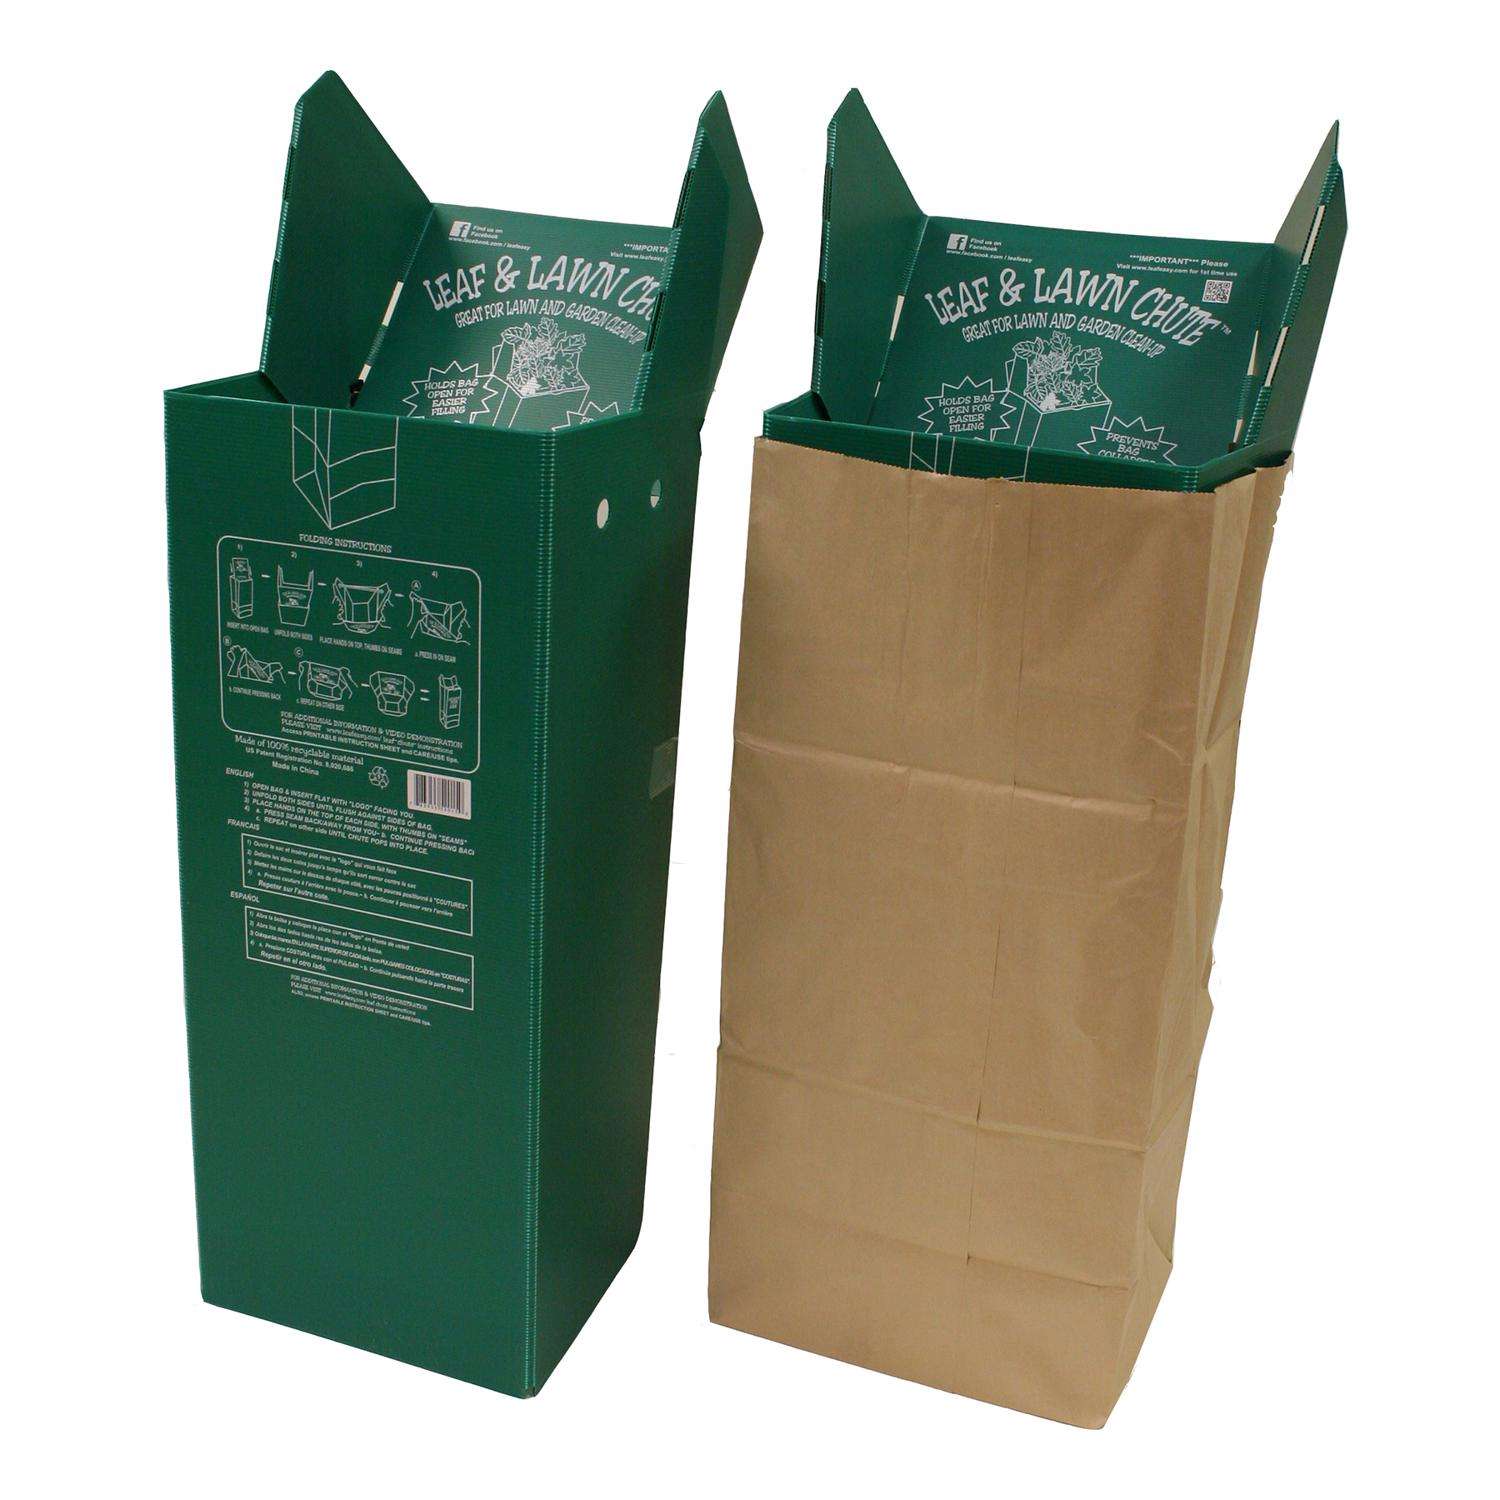 New Rolling Lawn Trash Bag Holder  Bag holder, Trash bag, Garden bags